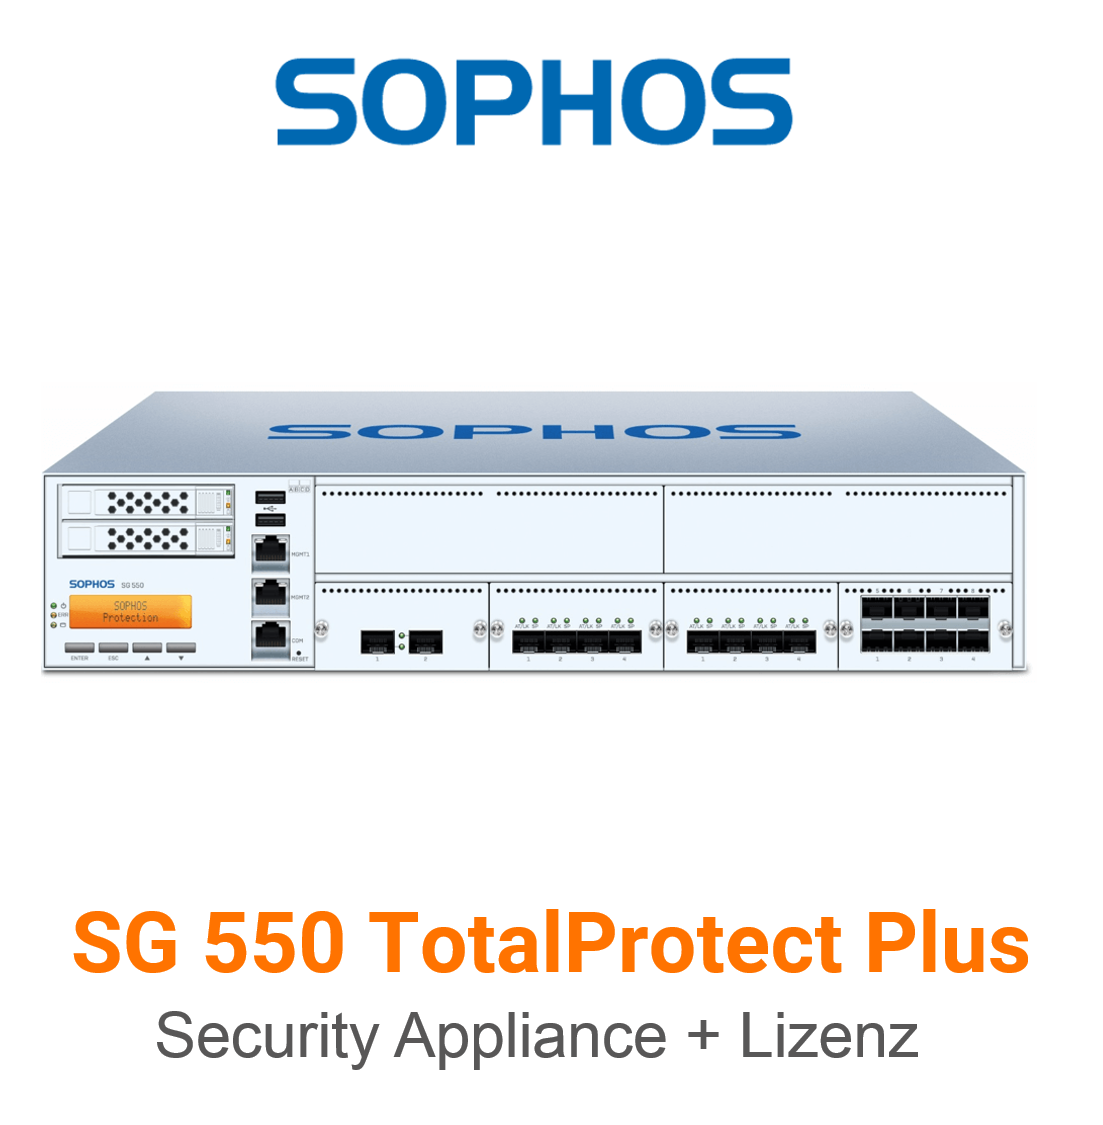 Sophos SG 550 TotalProtect Plus Bundle (Hardware + Lizenz)